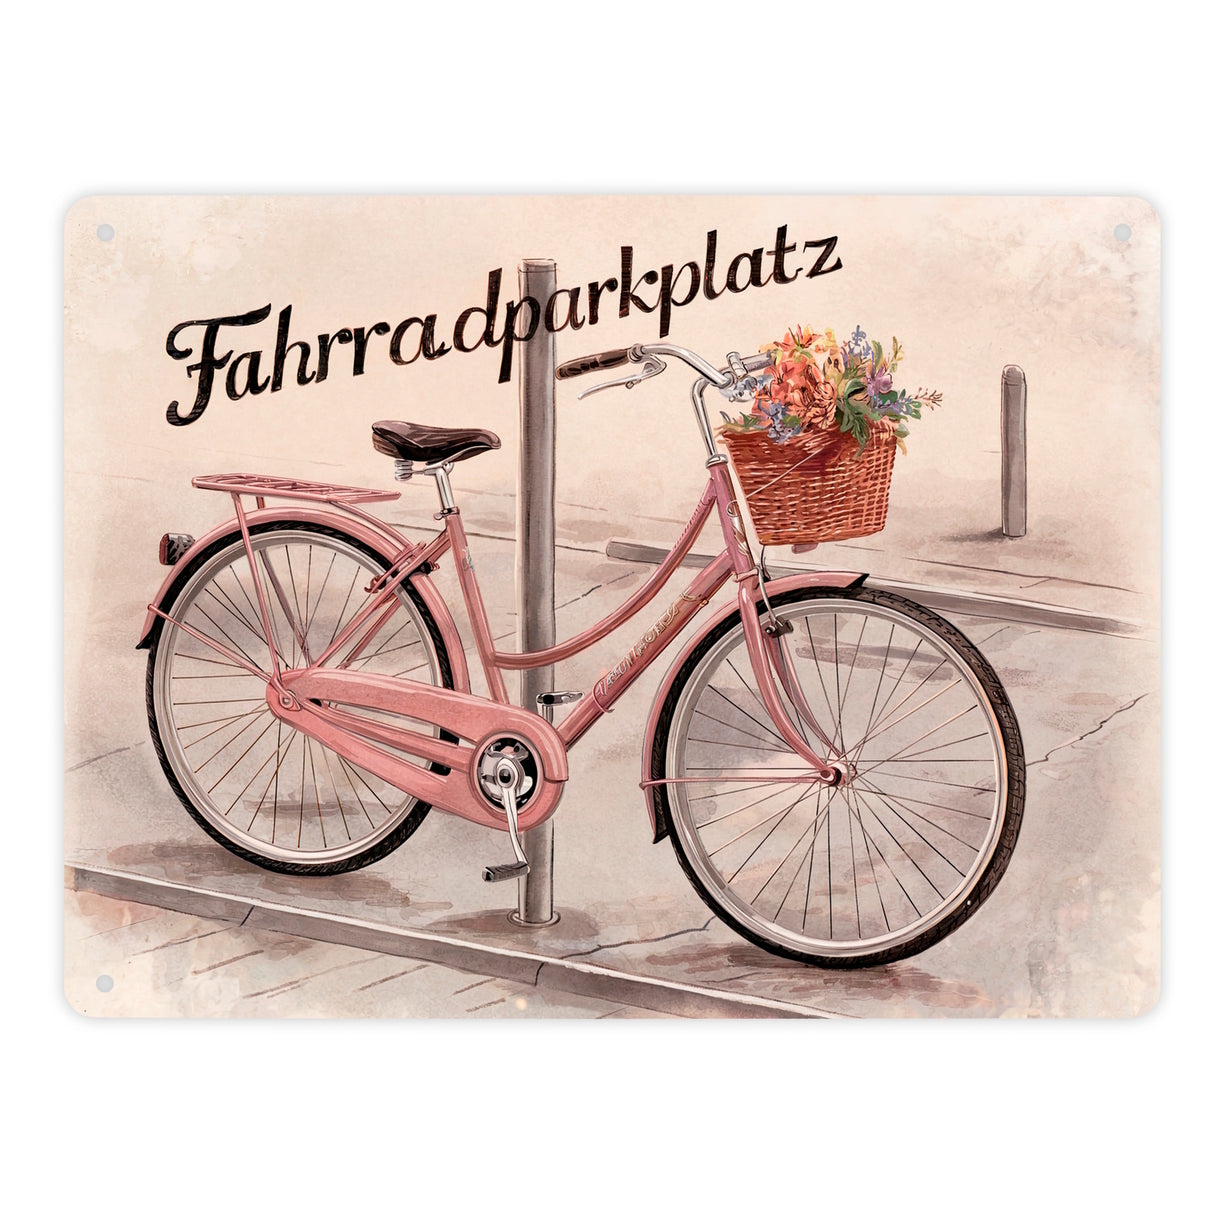 Fahrradparkplatz Metallschild in 15x20 cm mit rosa Drahtesel und Blumenkorb